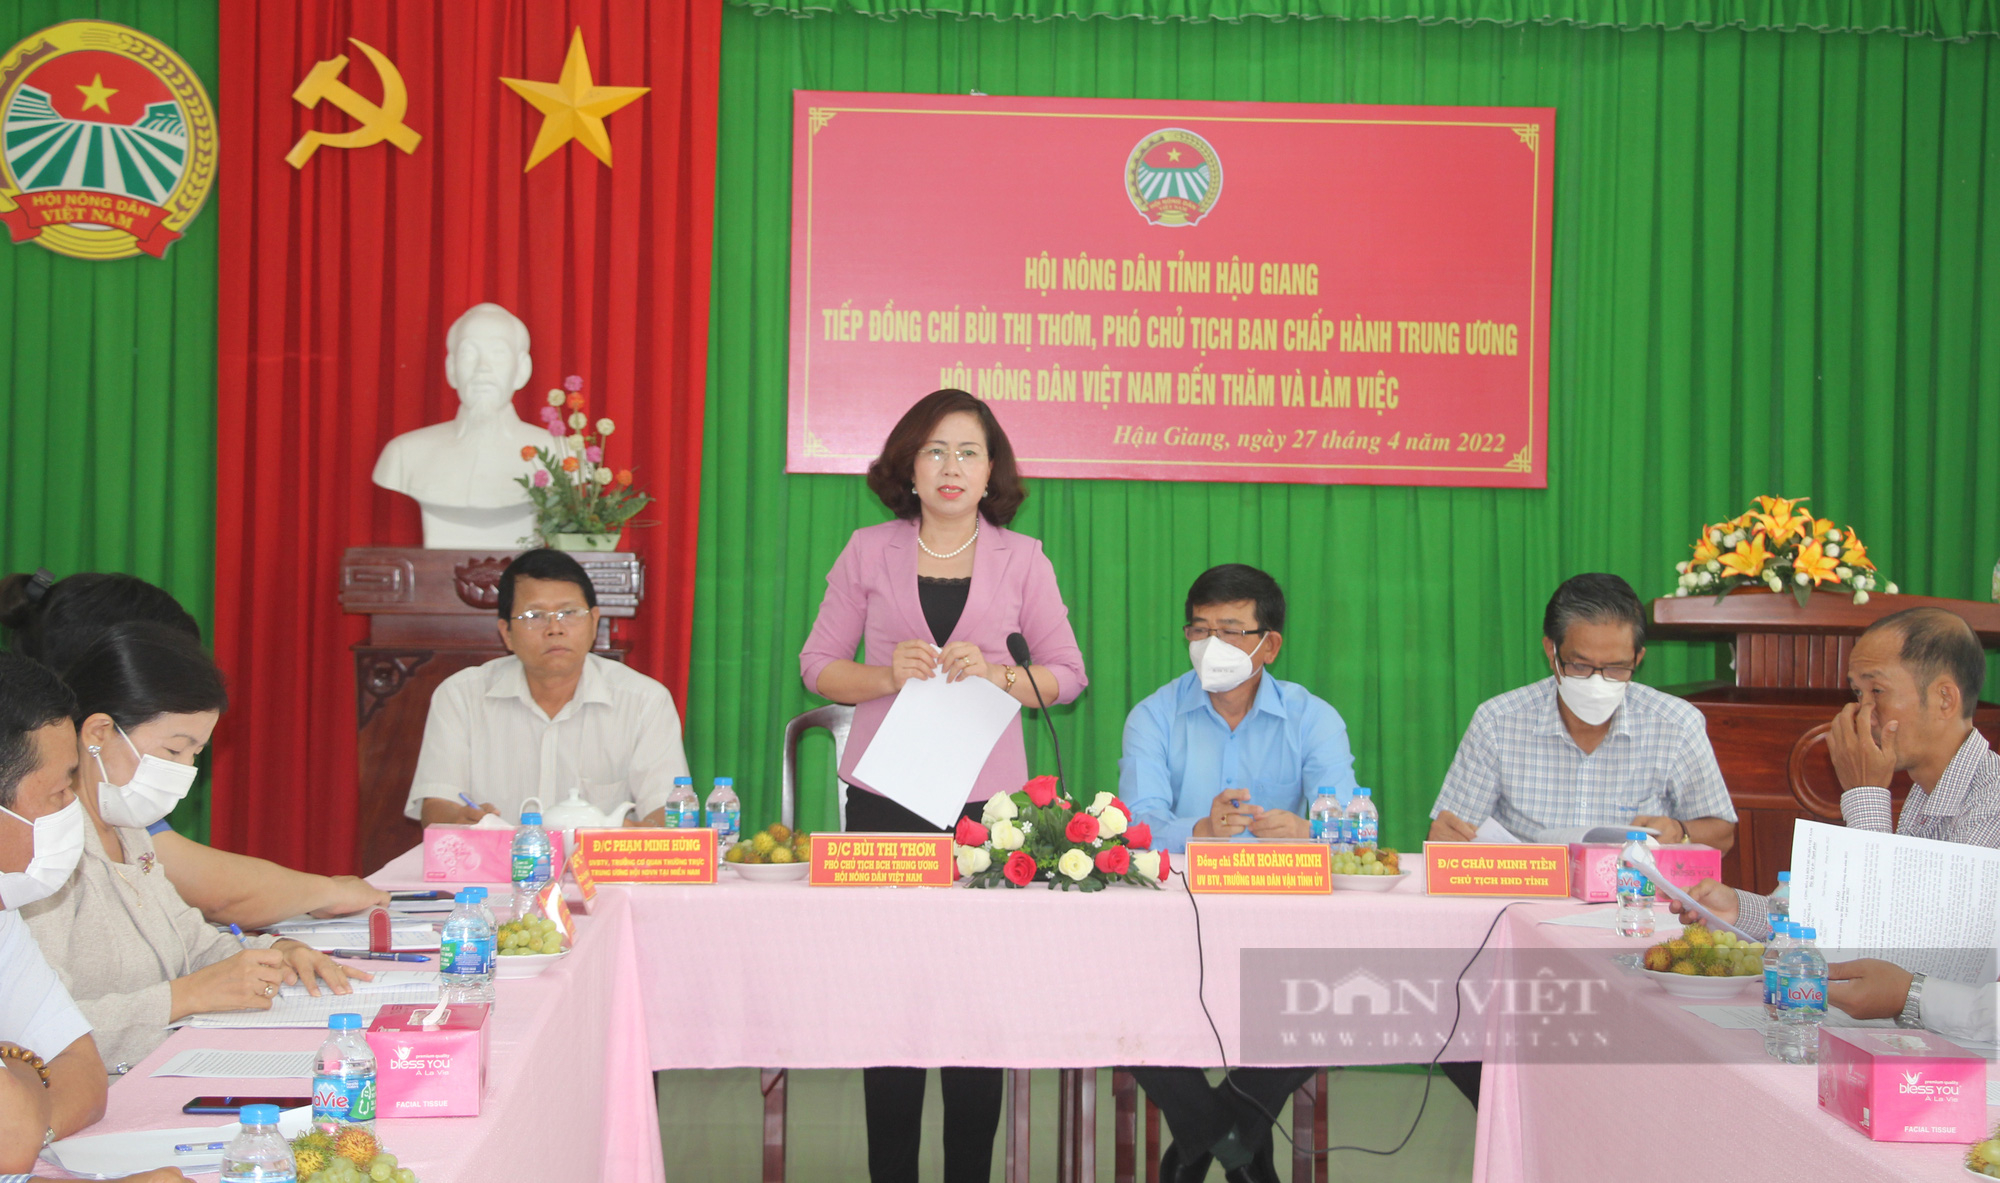 Phó Chủ tịch Hội NDVN Bùi Thị Thơm làm việc tại Hậu Giang: Cần quan tâm hơn đến tiêu thụ nông sản cho nông dân- Ảnh 1.